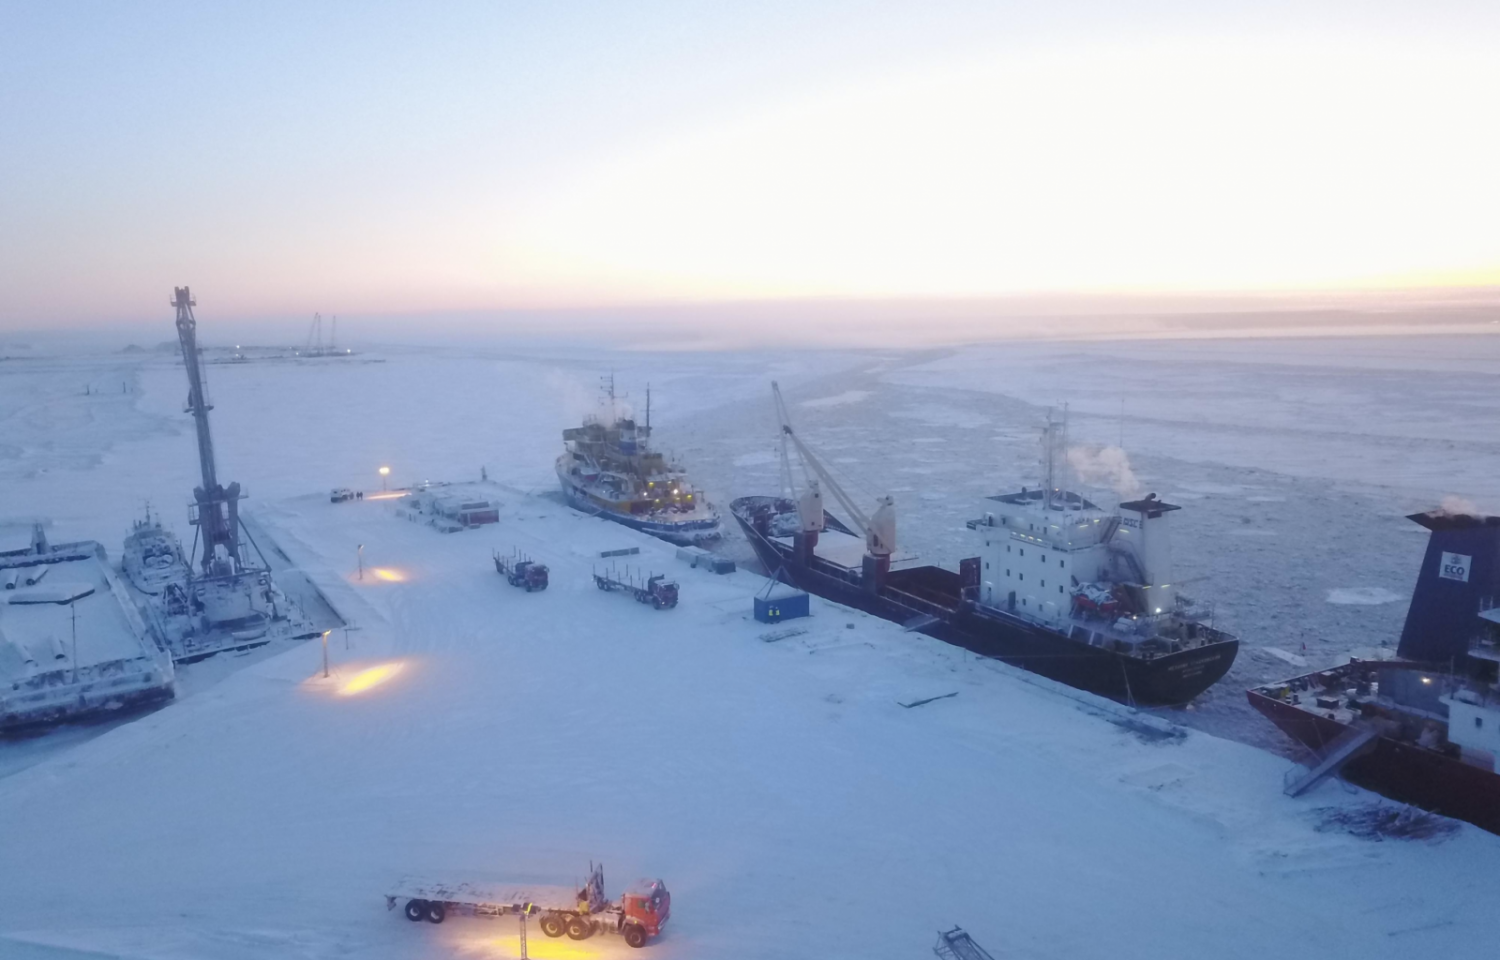 Bất chấp đại dịch, dự án LNG 2 ở Bắc Cực vẫn 